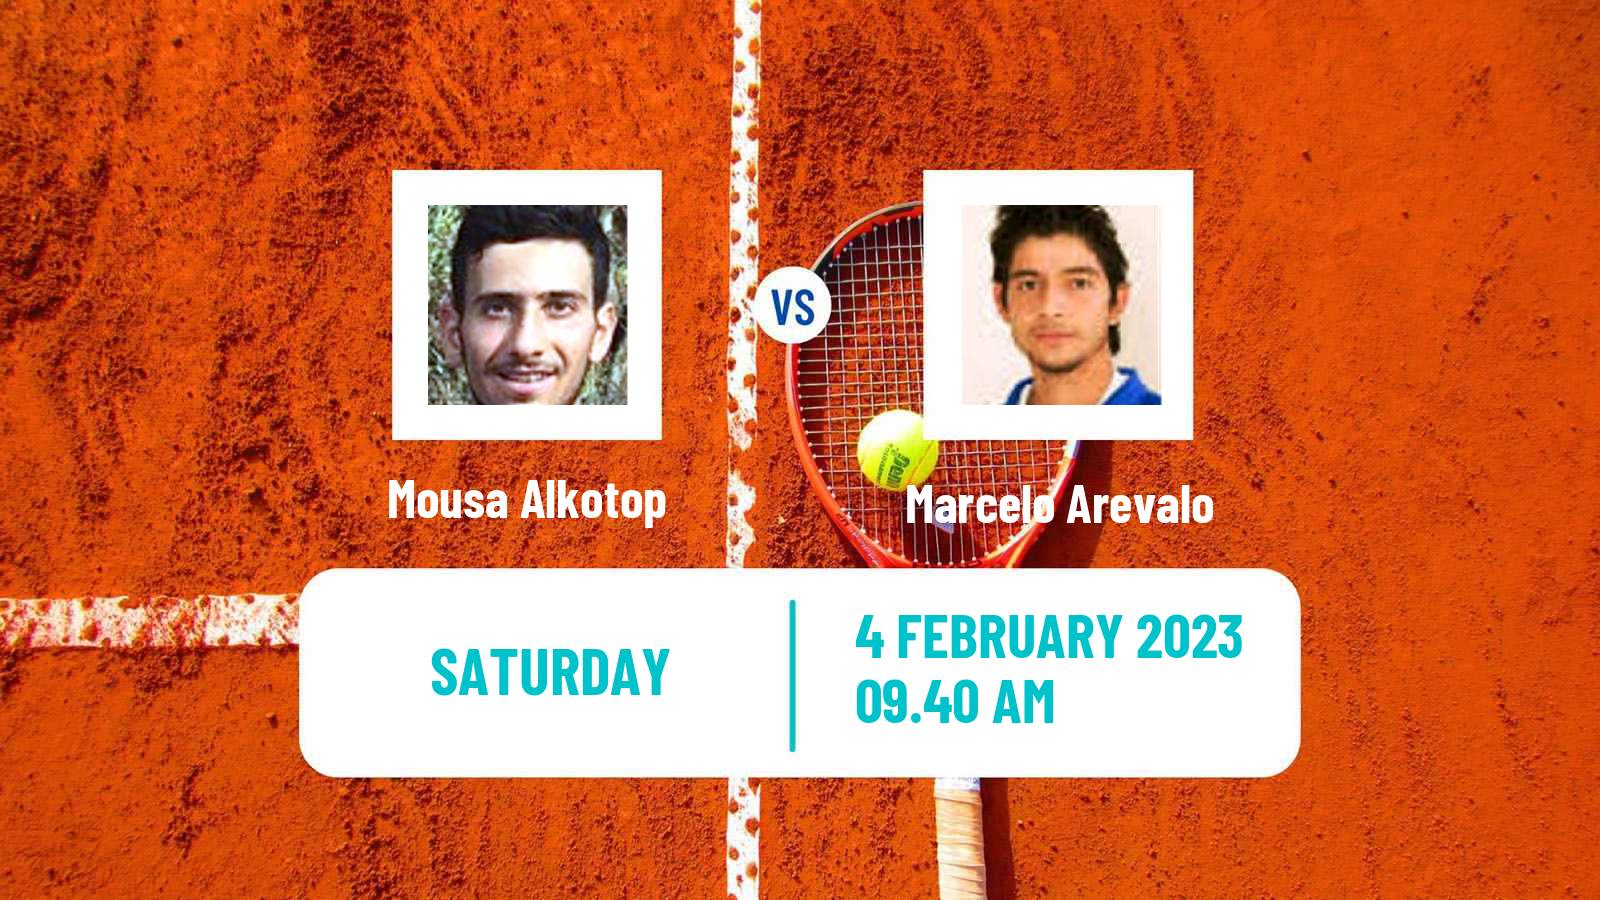 Tennis Davis Cup World Group II Mousa Alkotop - Marcelo Arevalo